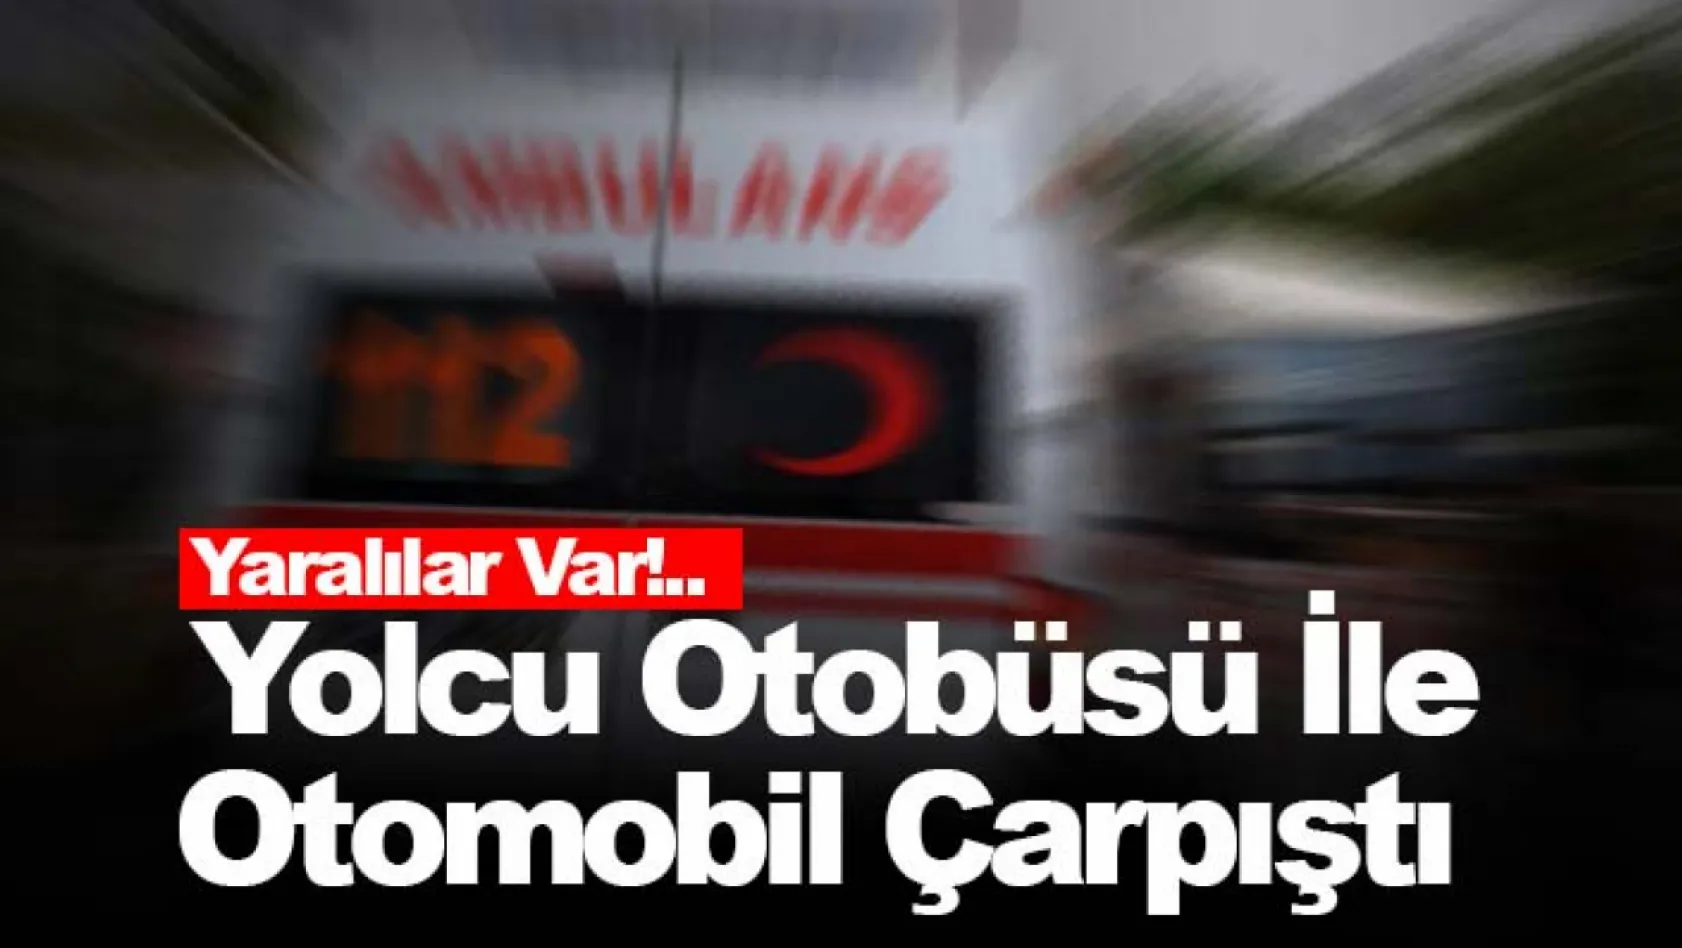 İzmir'de yolcu otobüsü ile otomobil çarpıştı: Yaralılar Var!..